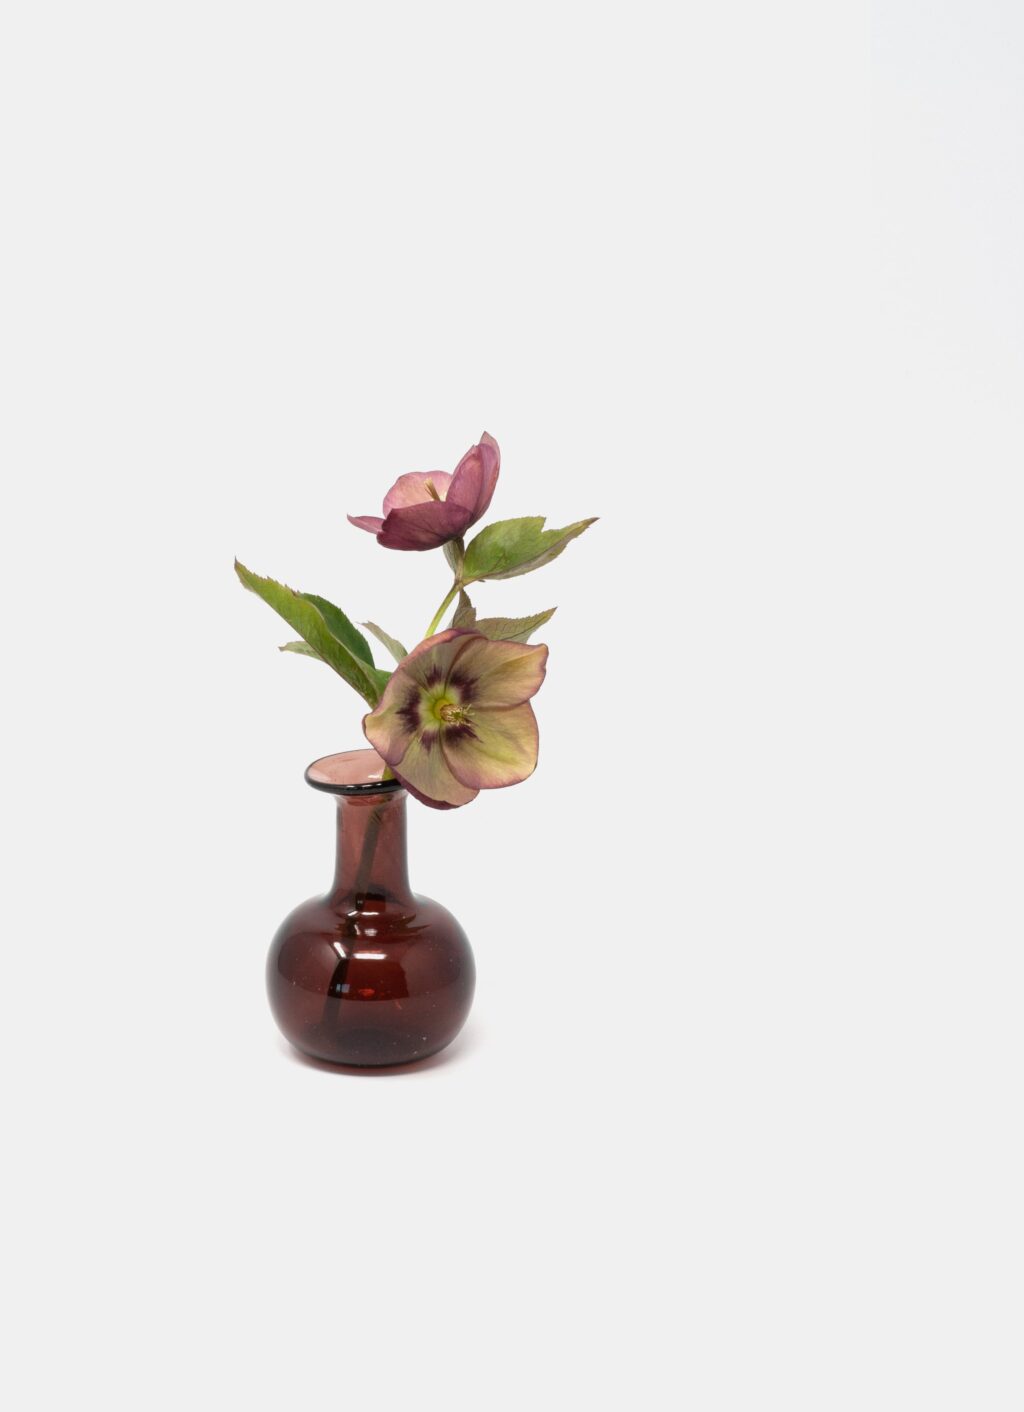 La Soufflerie - Handblown Glass Vase - Framboise - Piccola